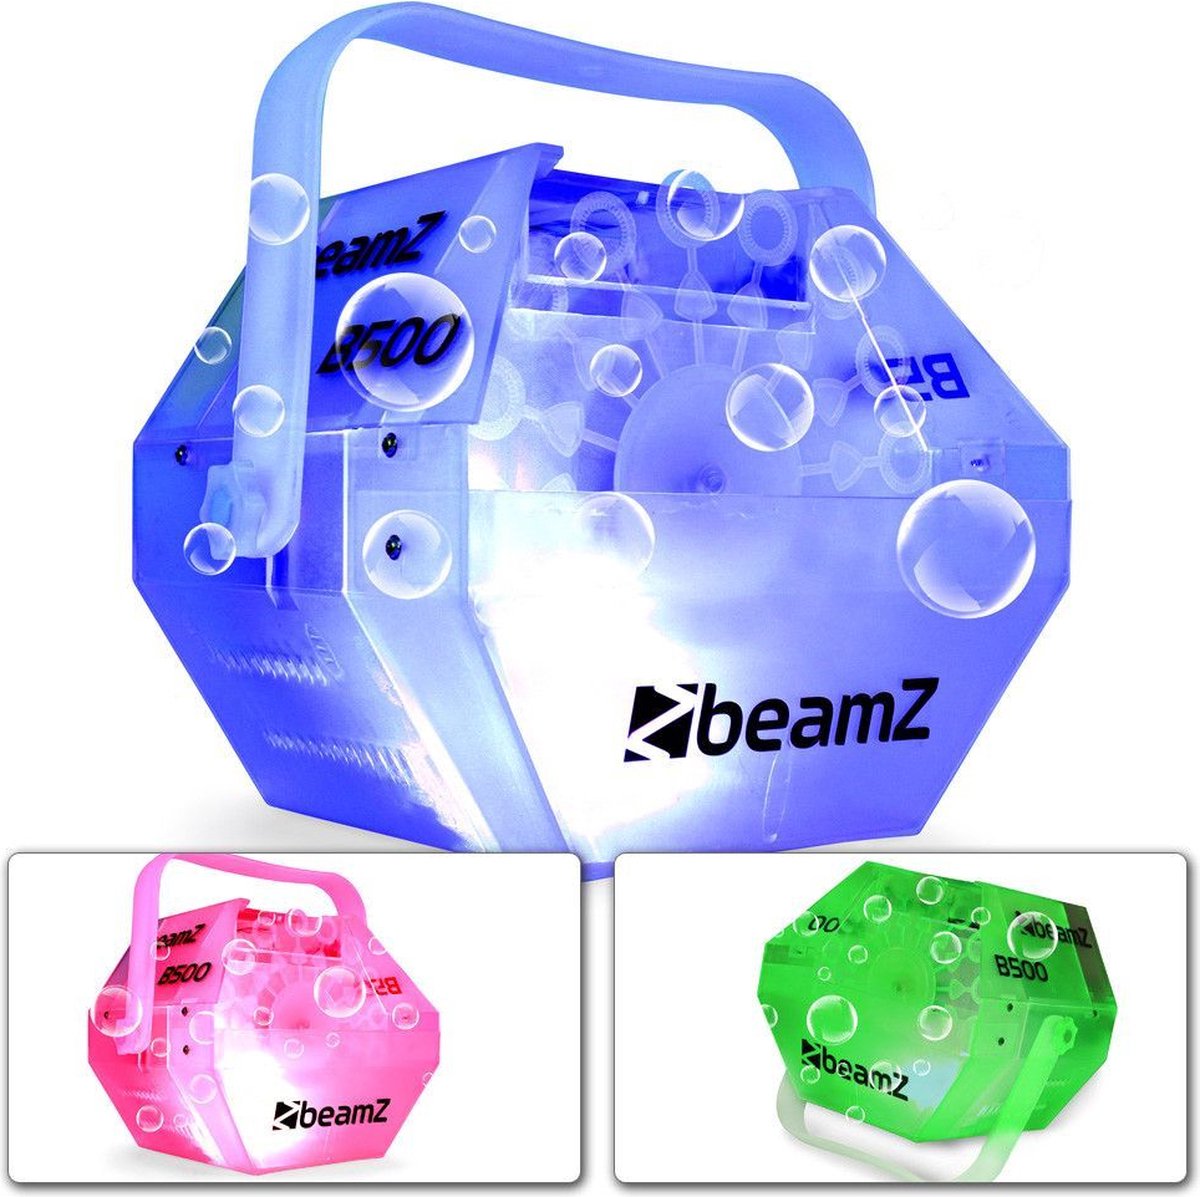 Bellenblaasmachine - BeamZ B500LED bellenblaas machine - Door ingebouwde LED's verandert de kleur van de behuizing! - BeamZ